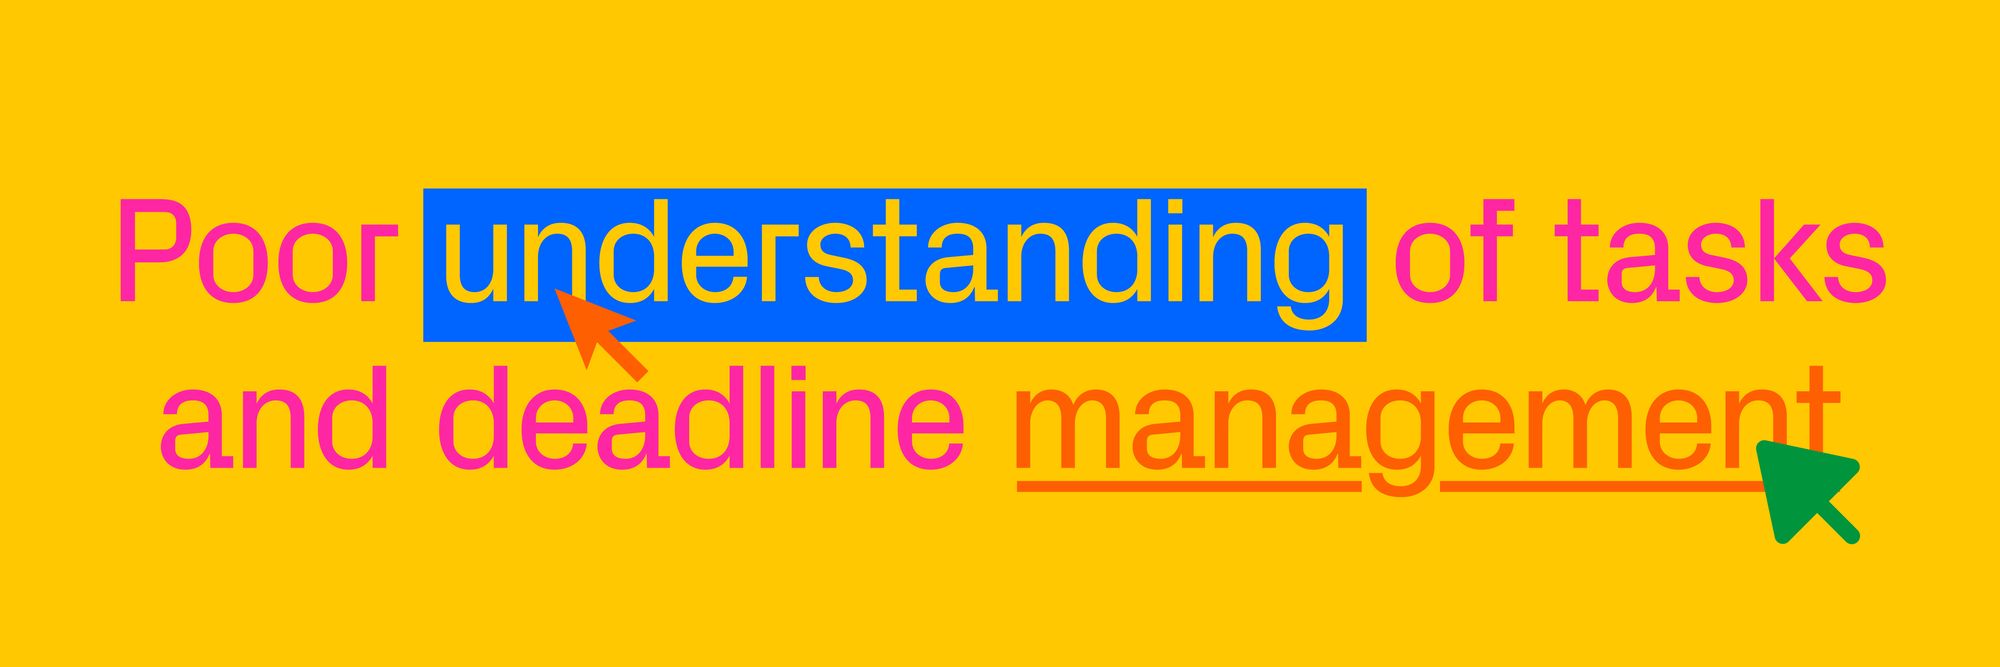 readymag blog_poor understanding of tasks and deadline management